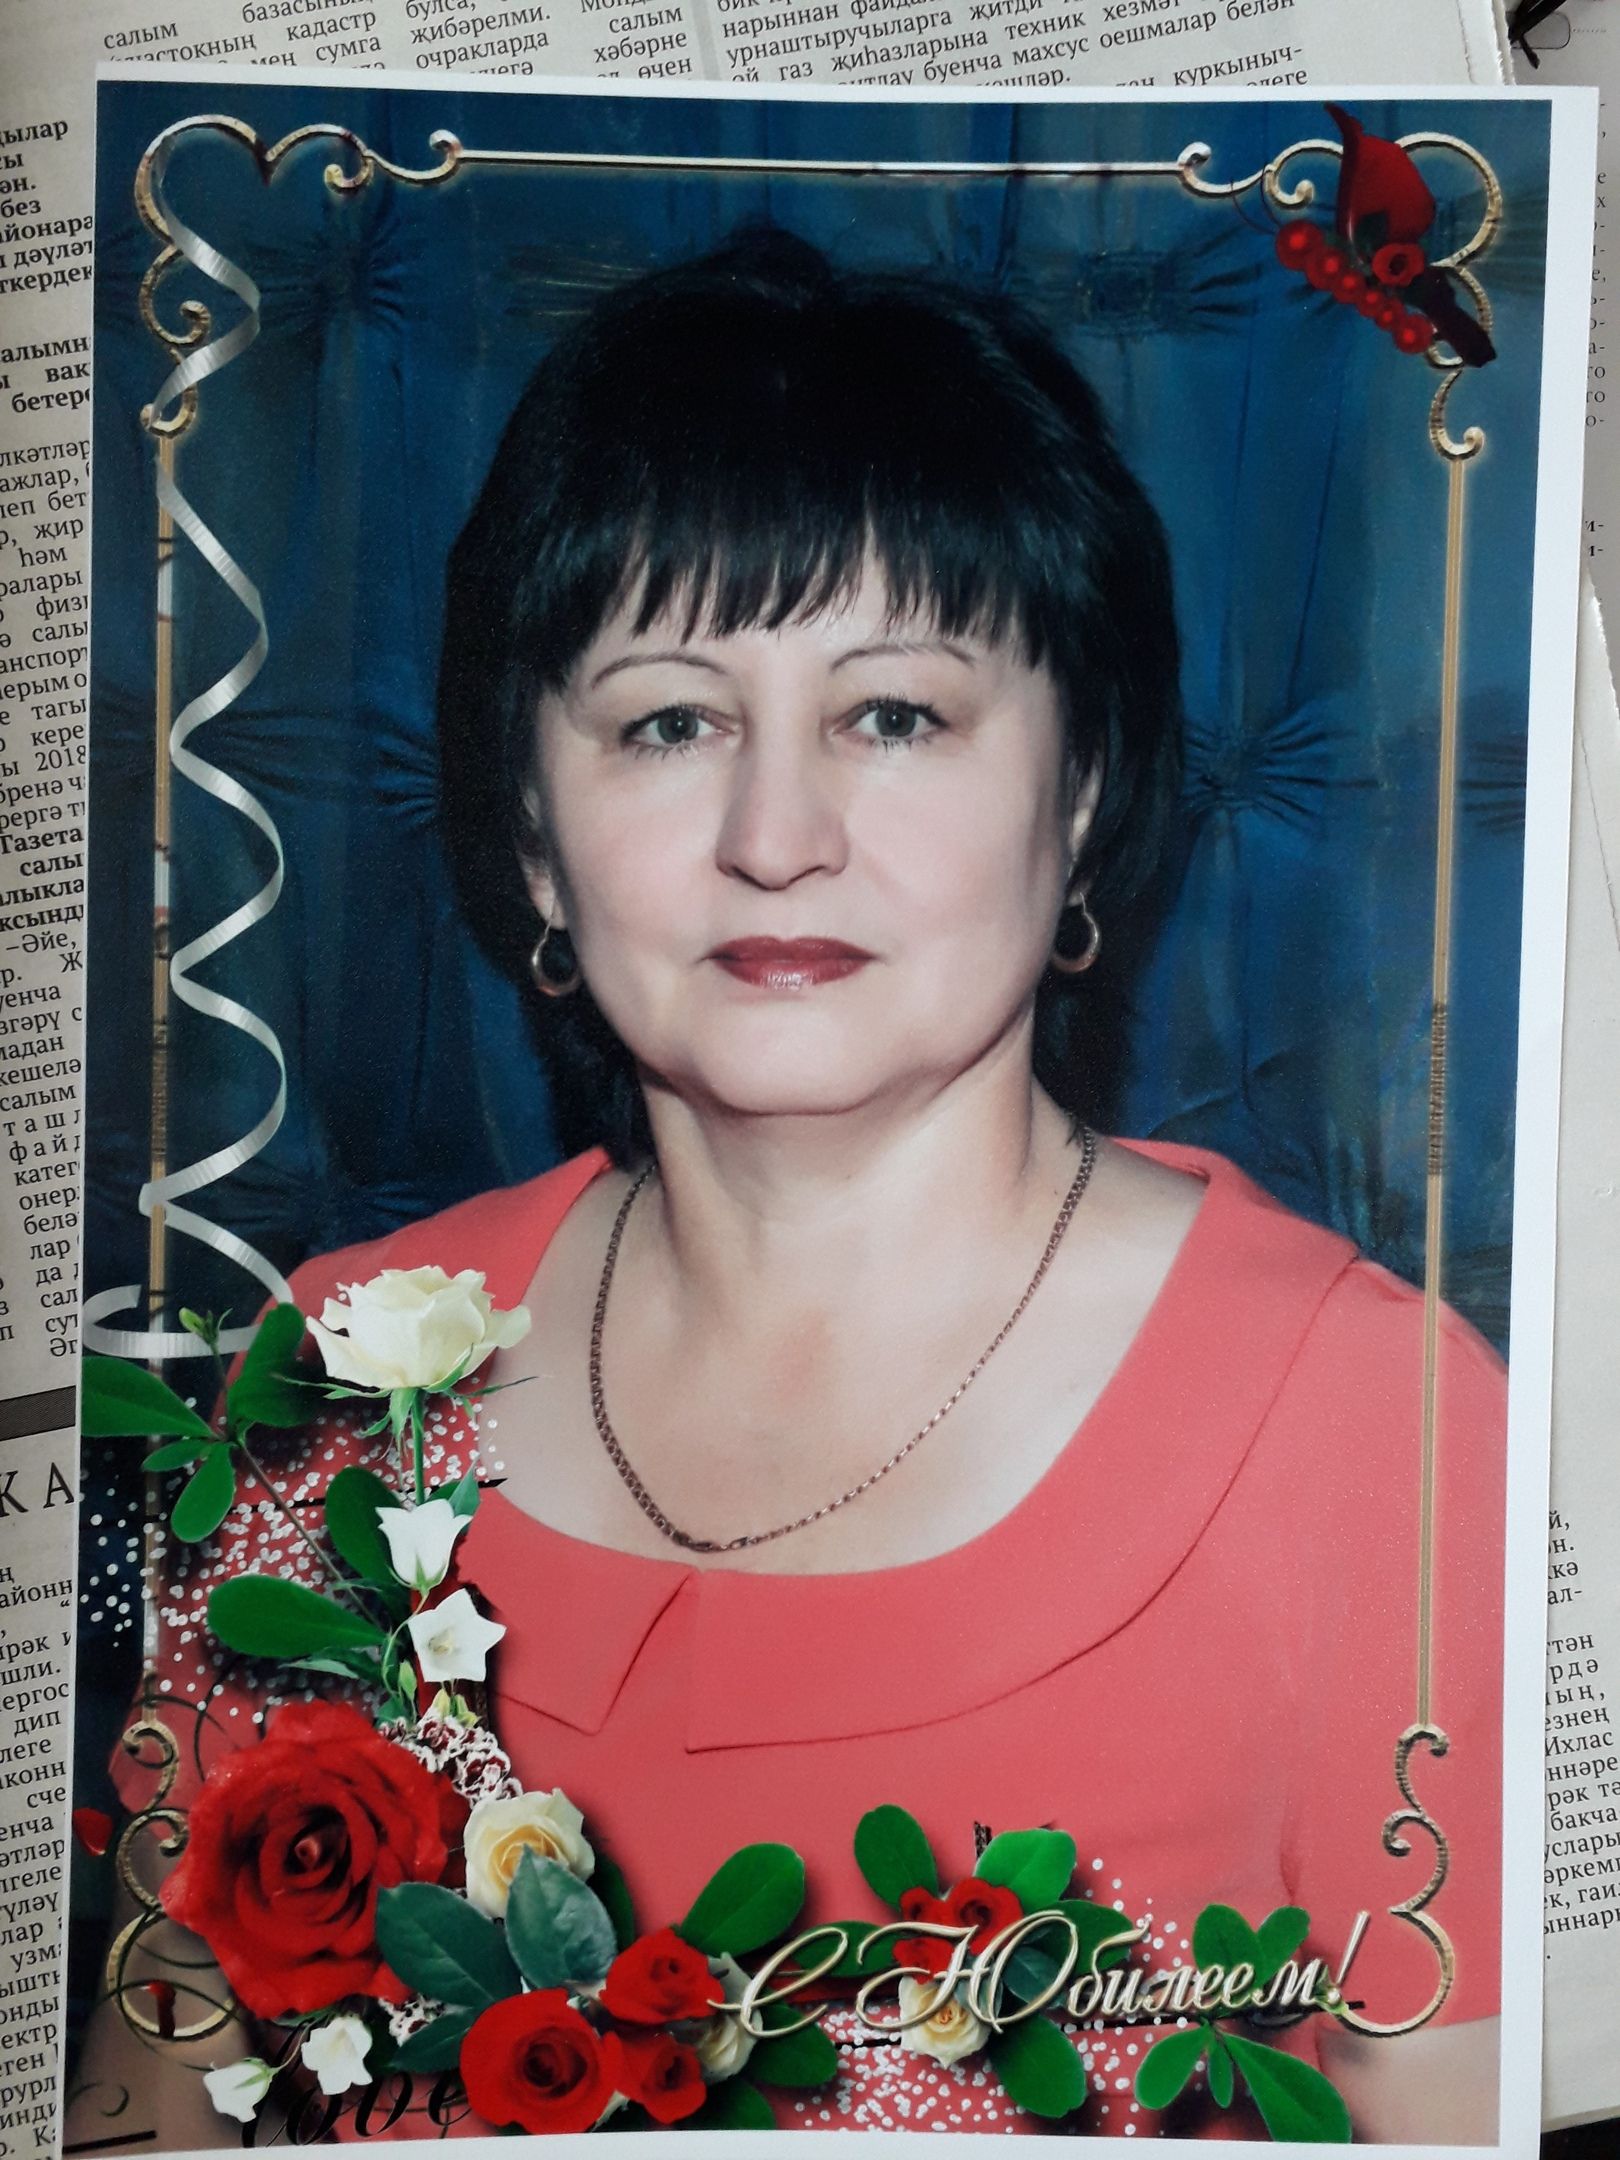 Очень дорогой для нас человек Киямова Асия Анасовна отмечает 55-летие